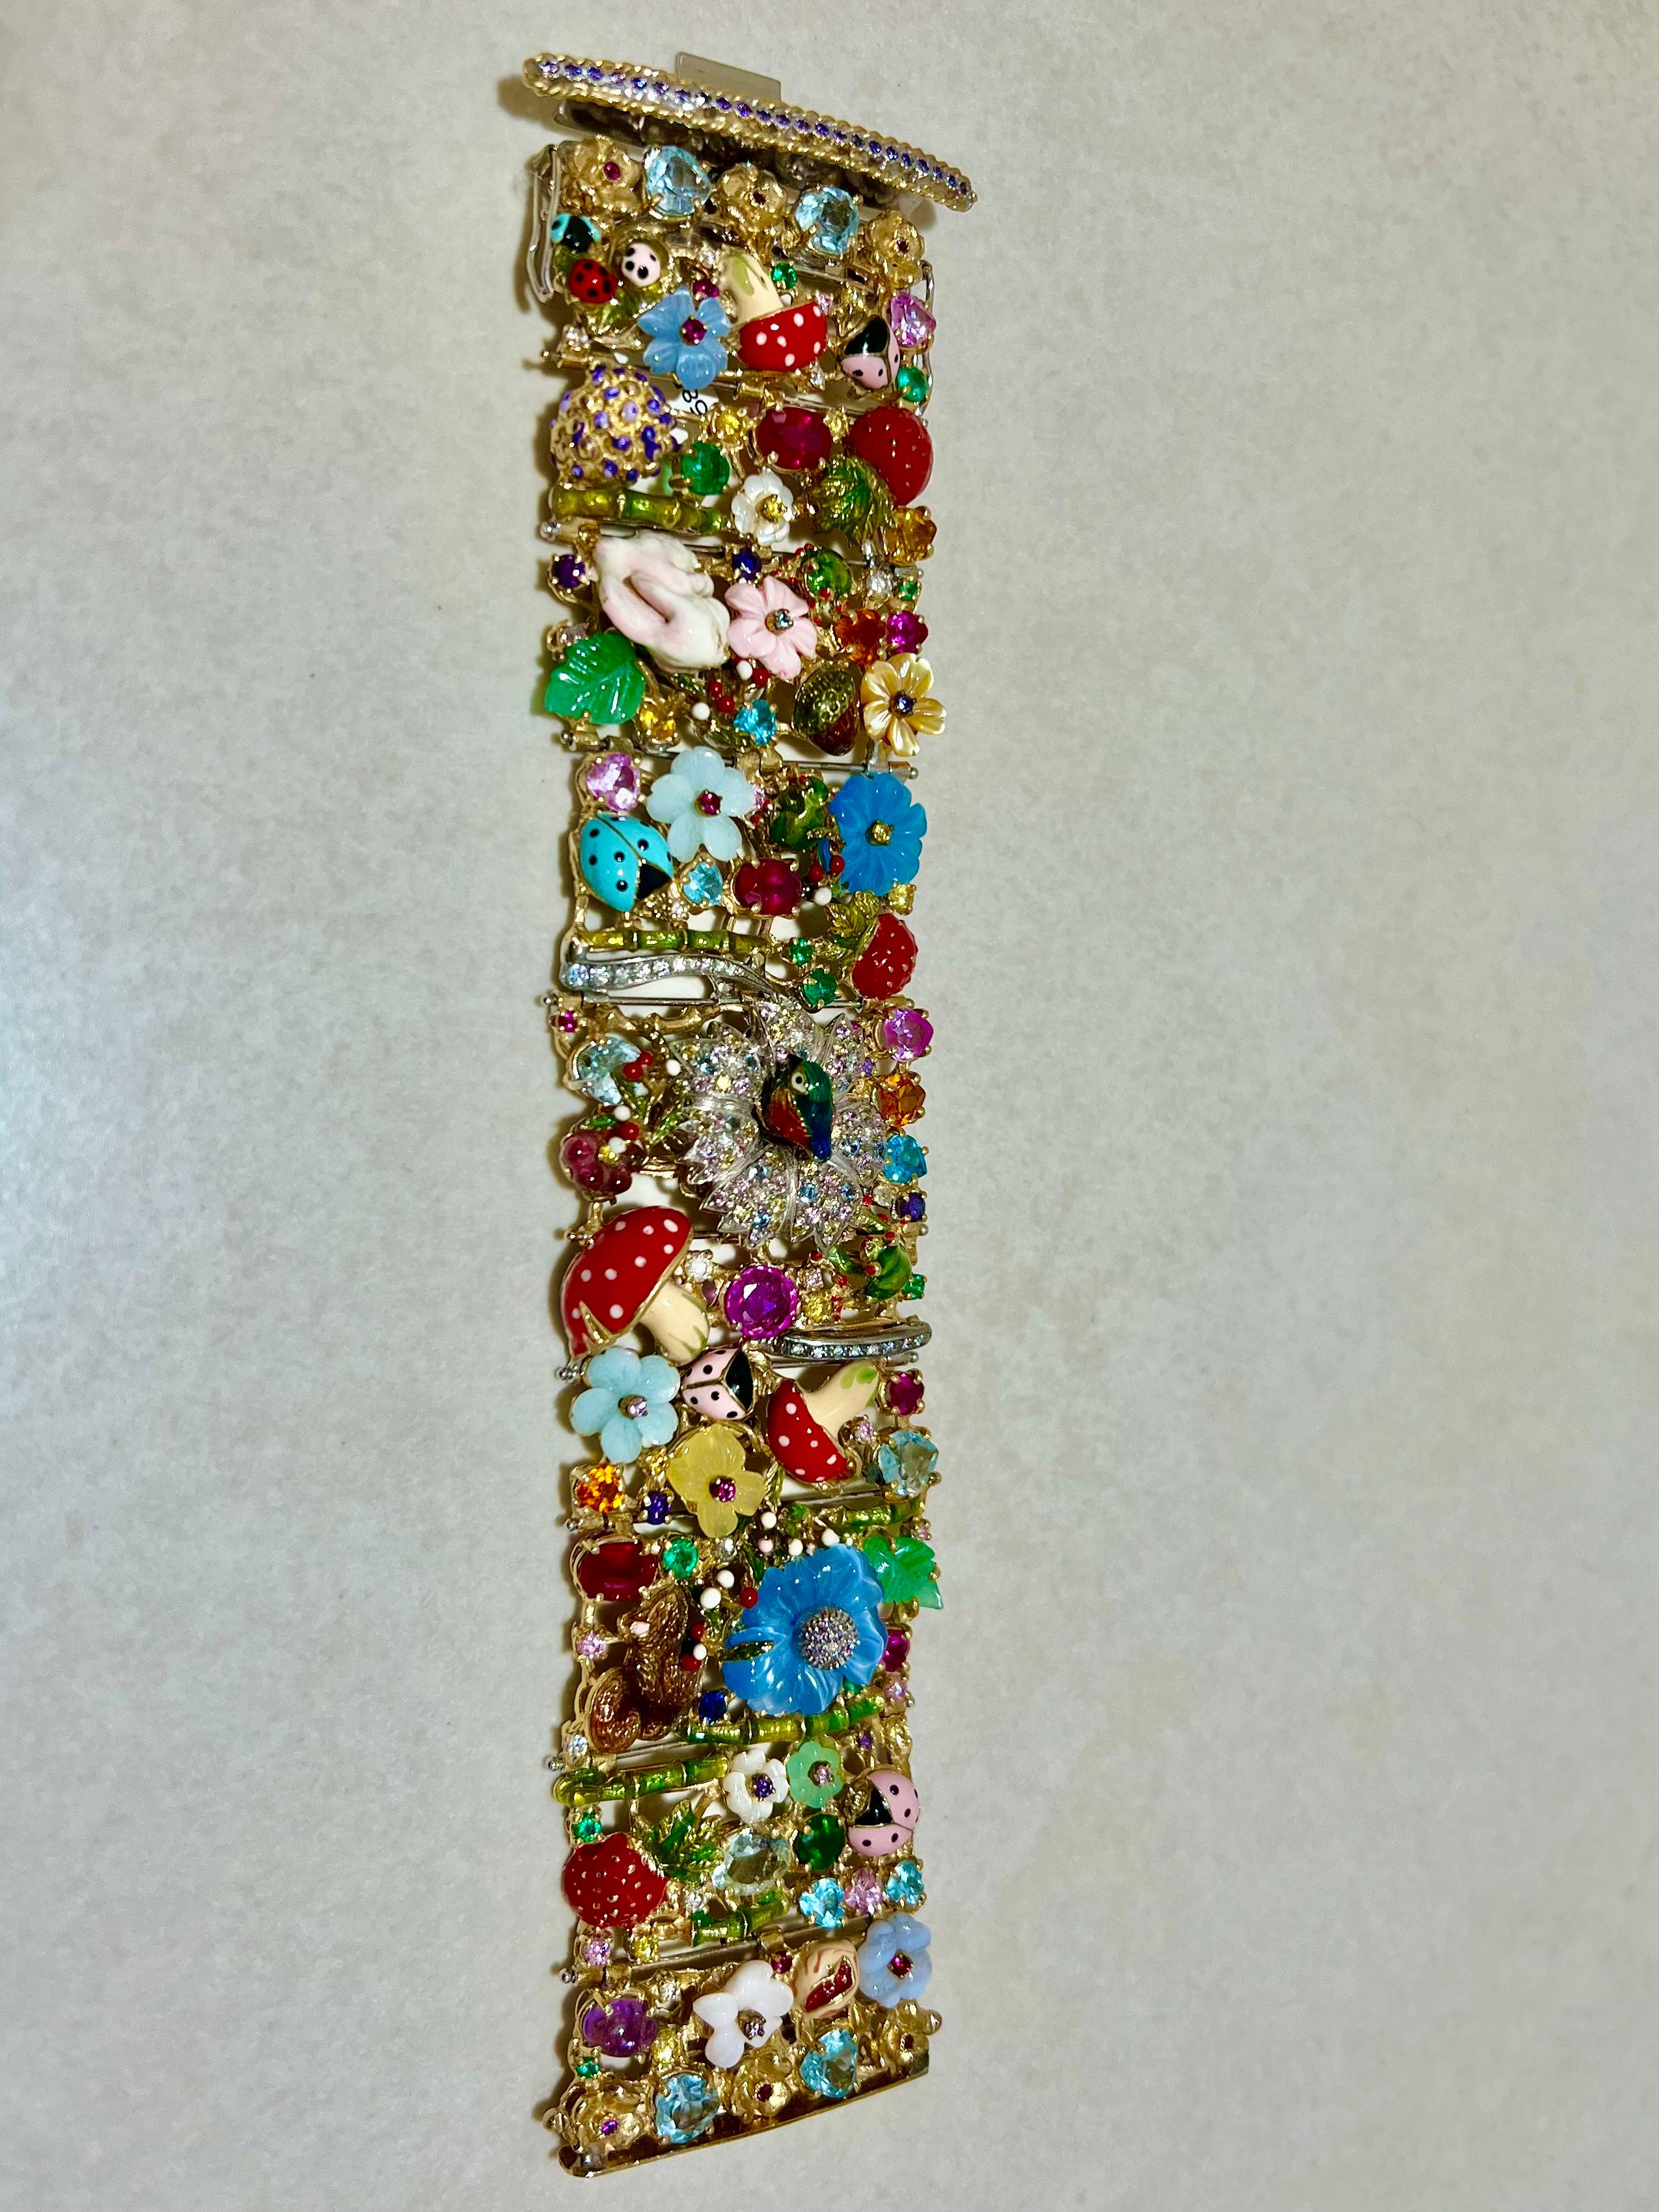 Bracelet Paradiso en 18kt  Or jaune avec émail, diamants et pierres de différentes couleurs (rubis, saphir, émeraude, tourmaline), une pièce unique du designer italien Santagostino.
